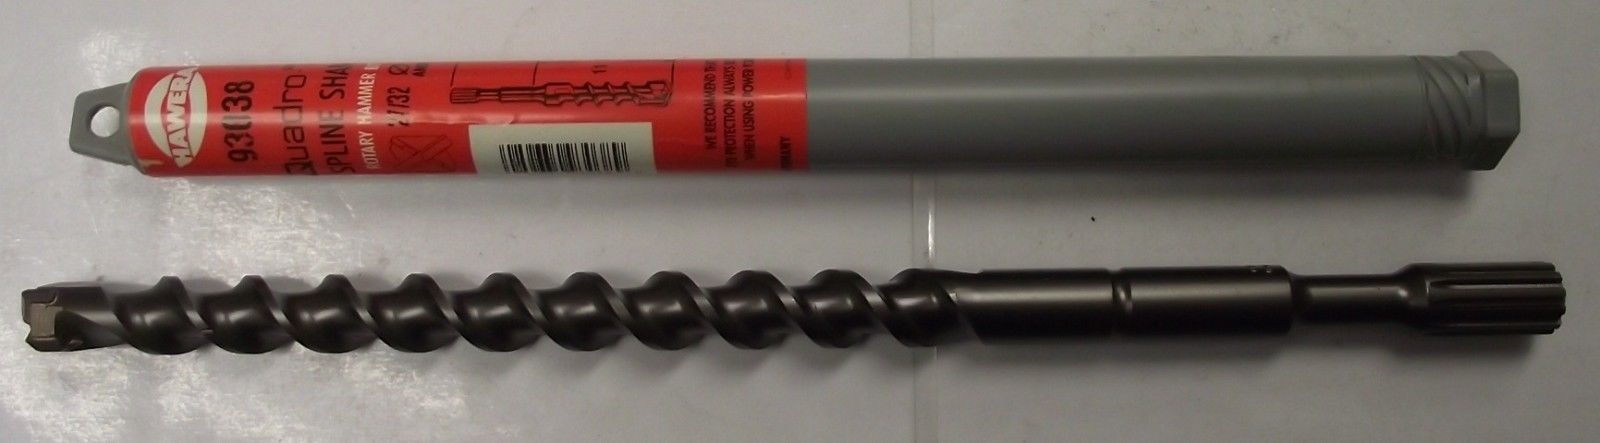 Hawera 93038 Spline Shank Rotary Hammer Drill Bit 27/32" x 10" x 15-3/4" Germany